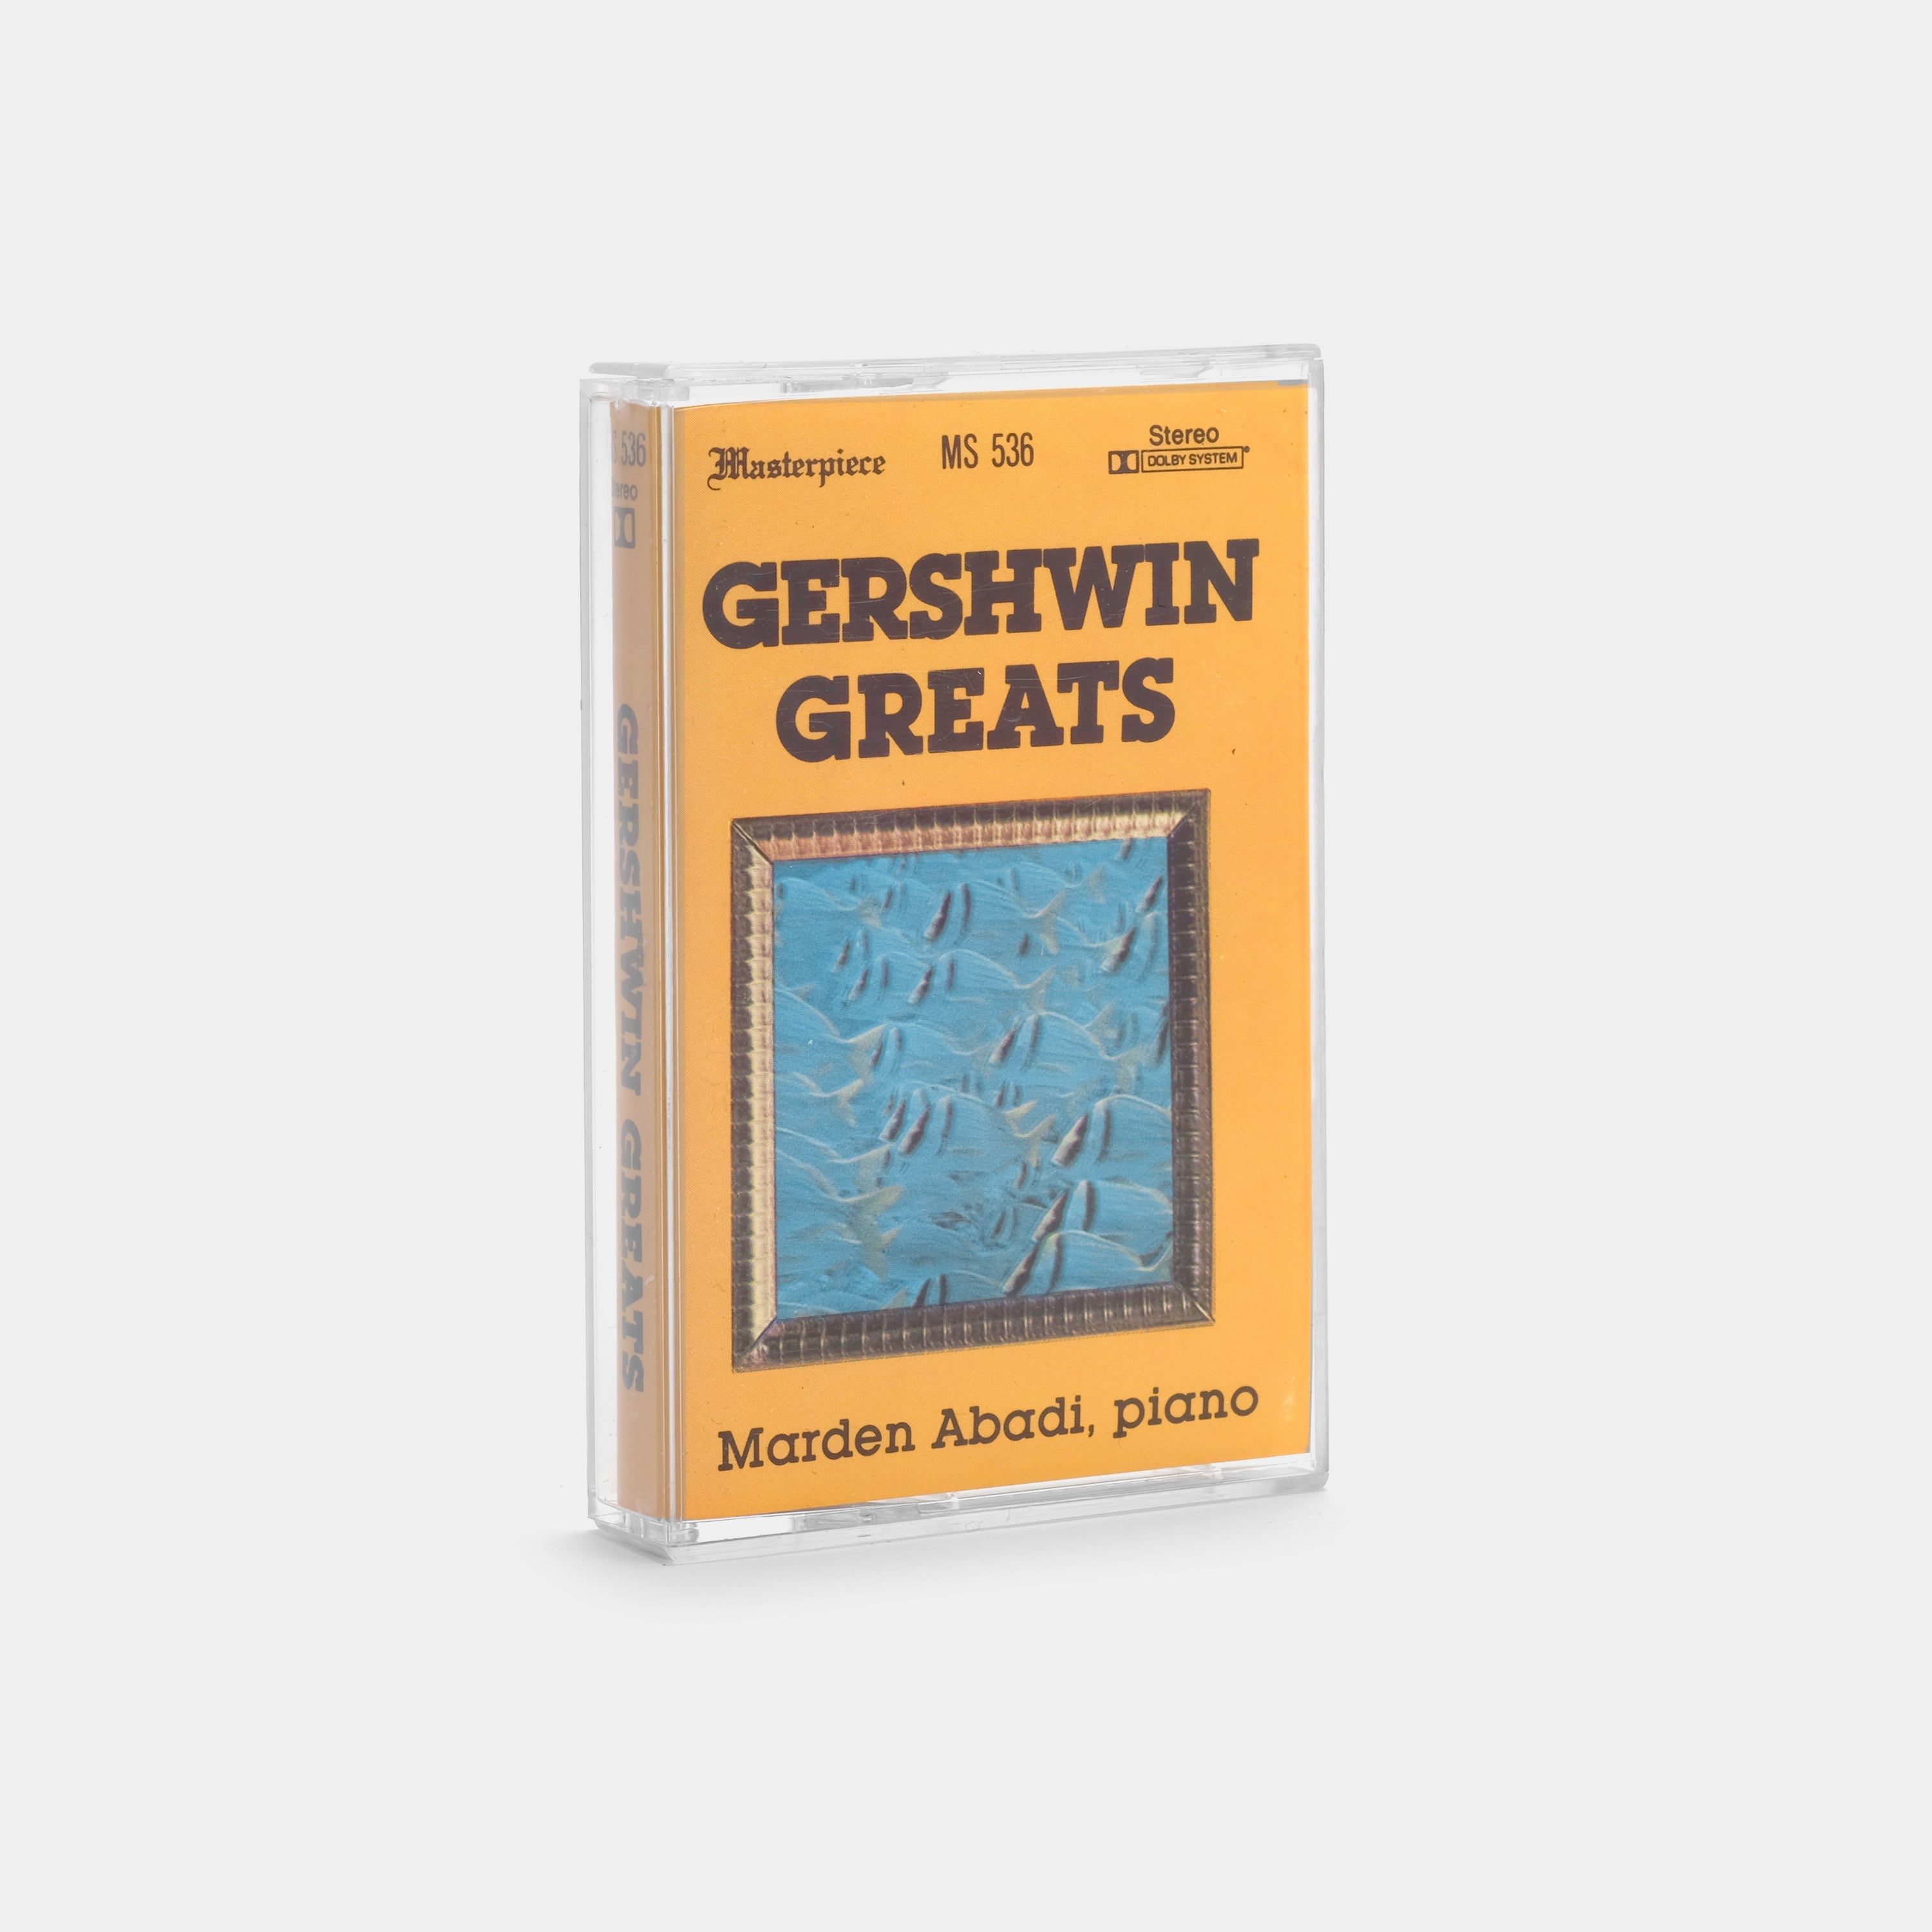 Gershwin Greats - Marden Abadi, Piano Cassette Tape